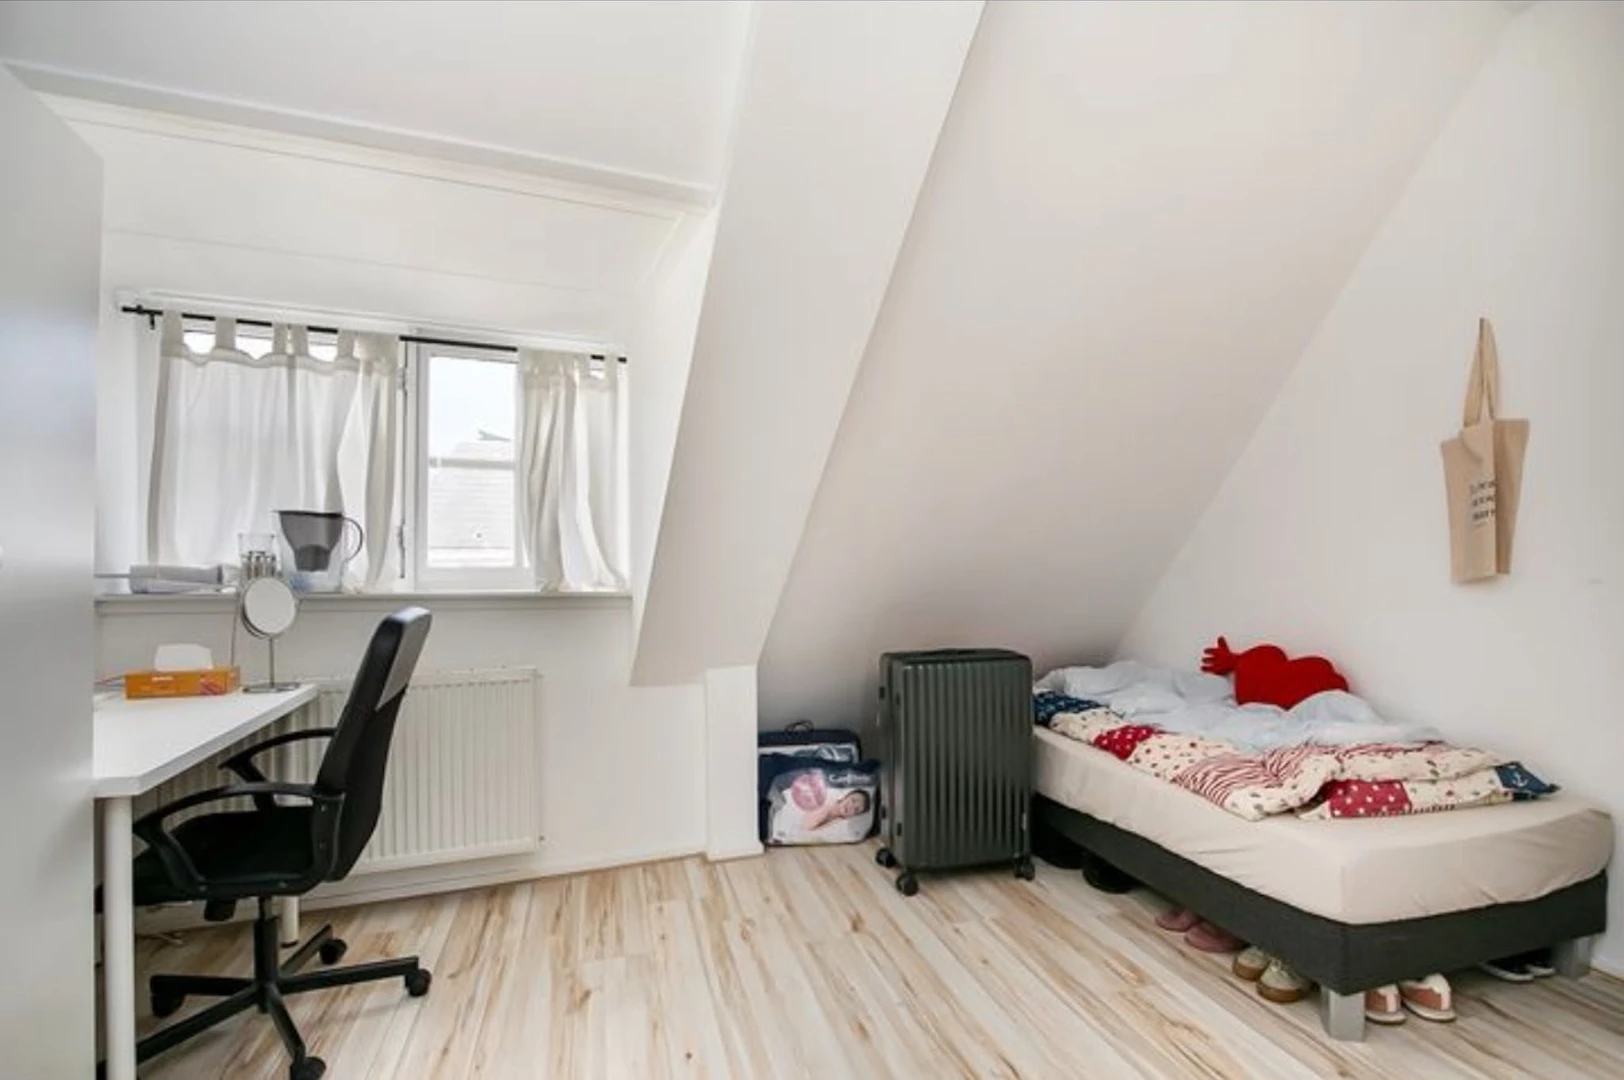 W pełni umeblowane mieszkanie w Groningen